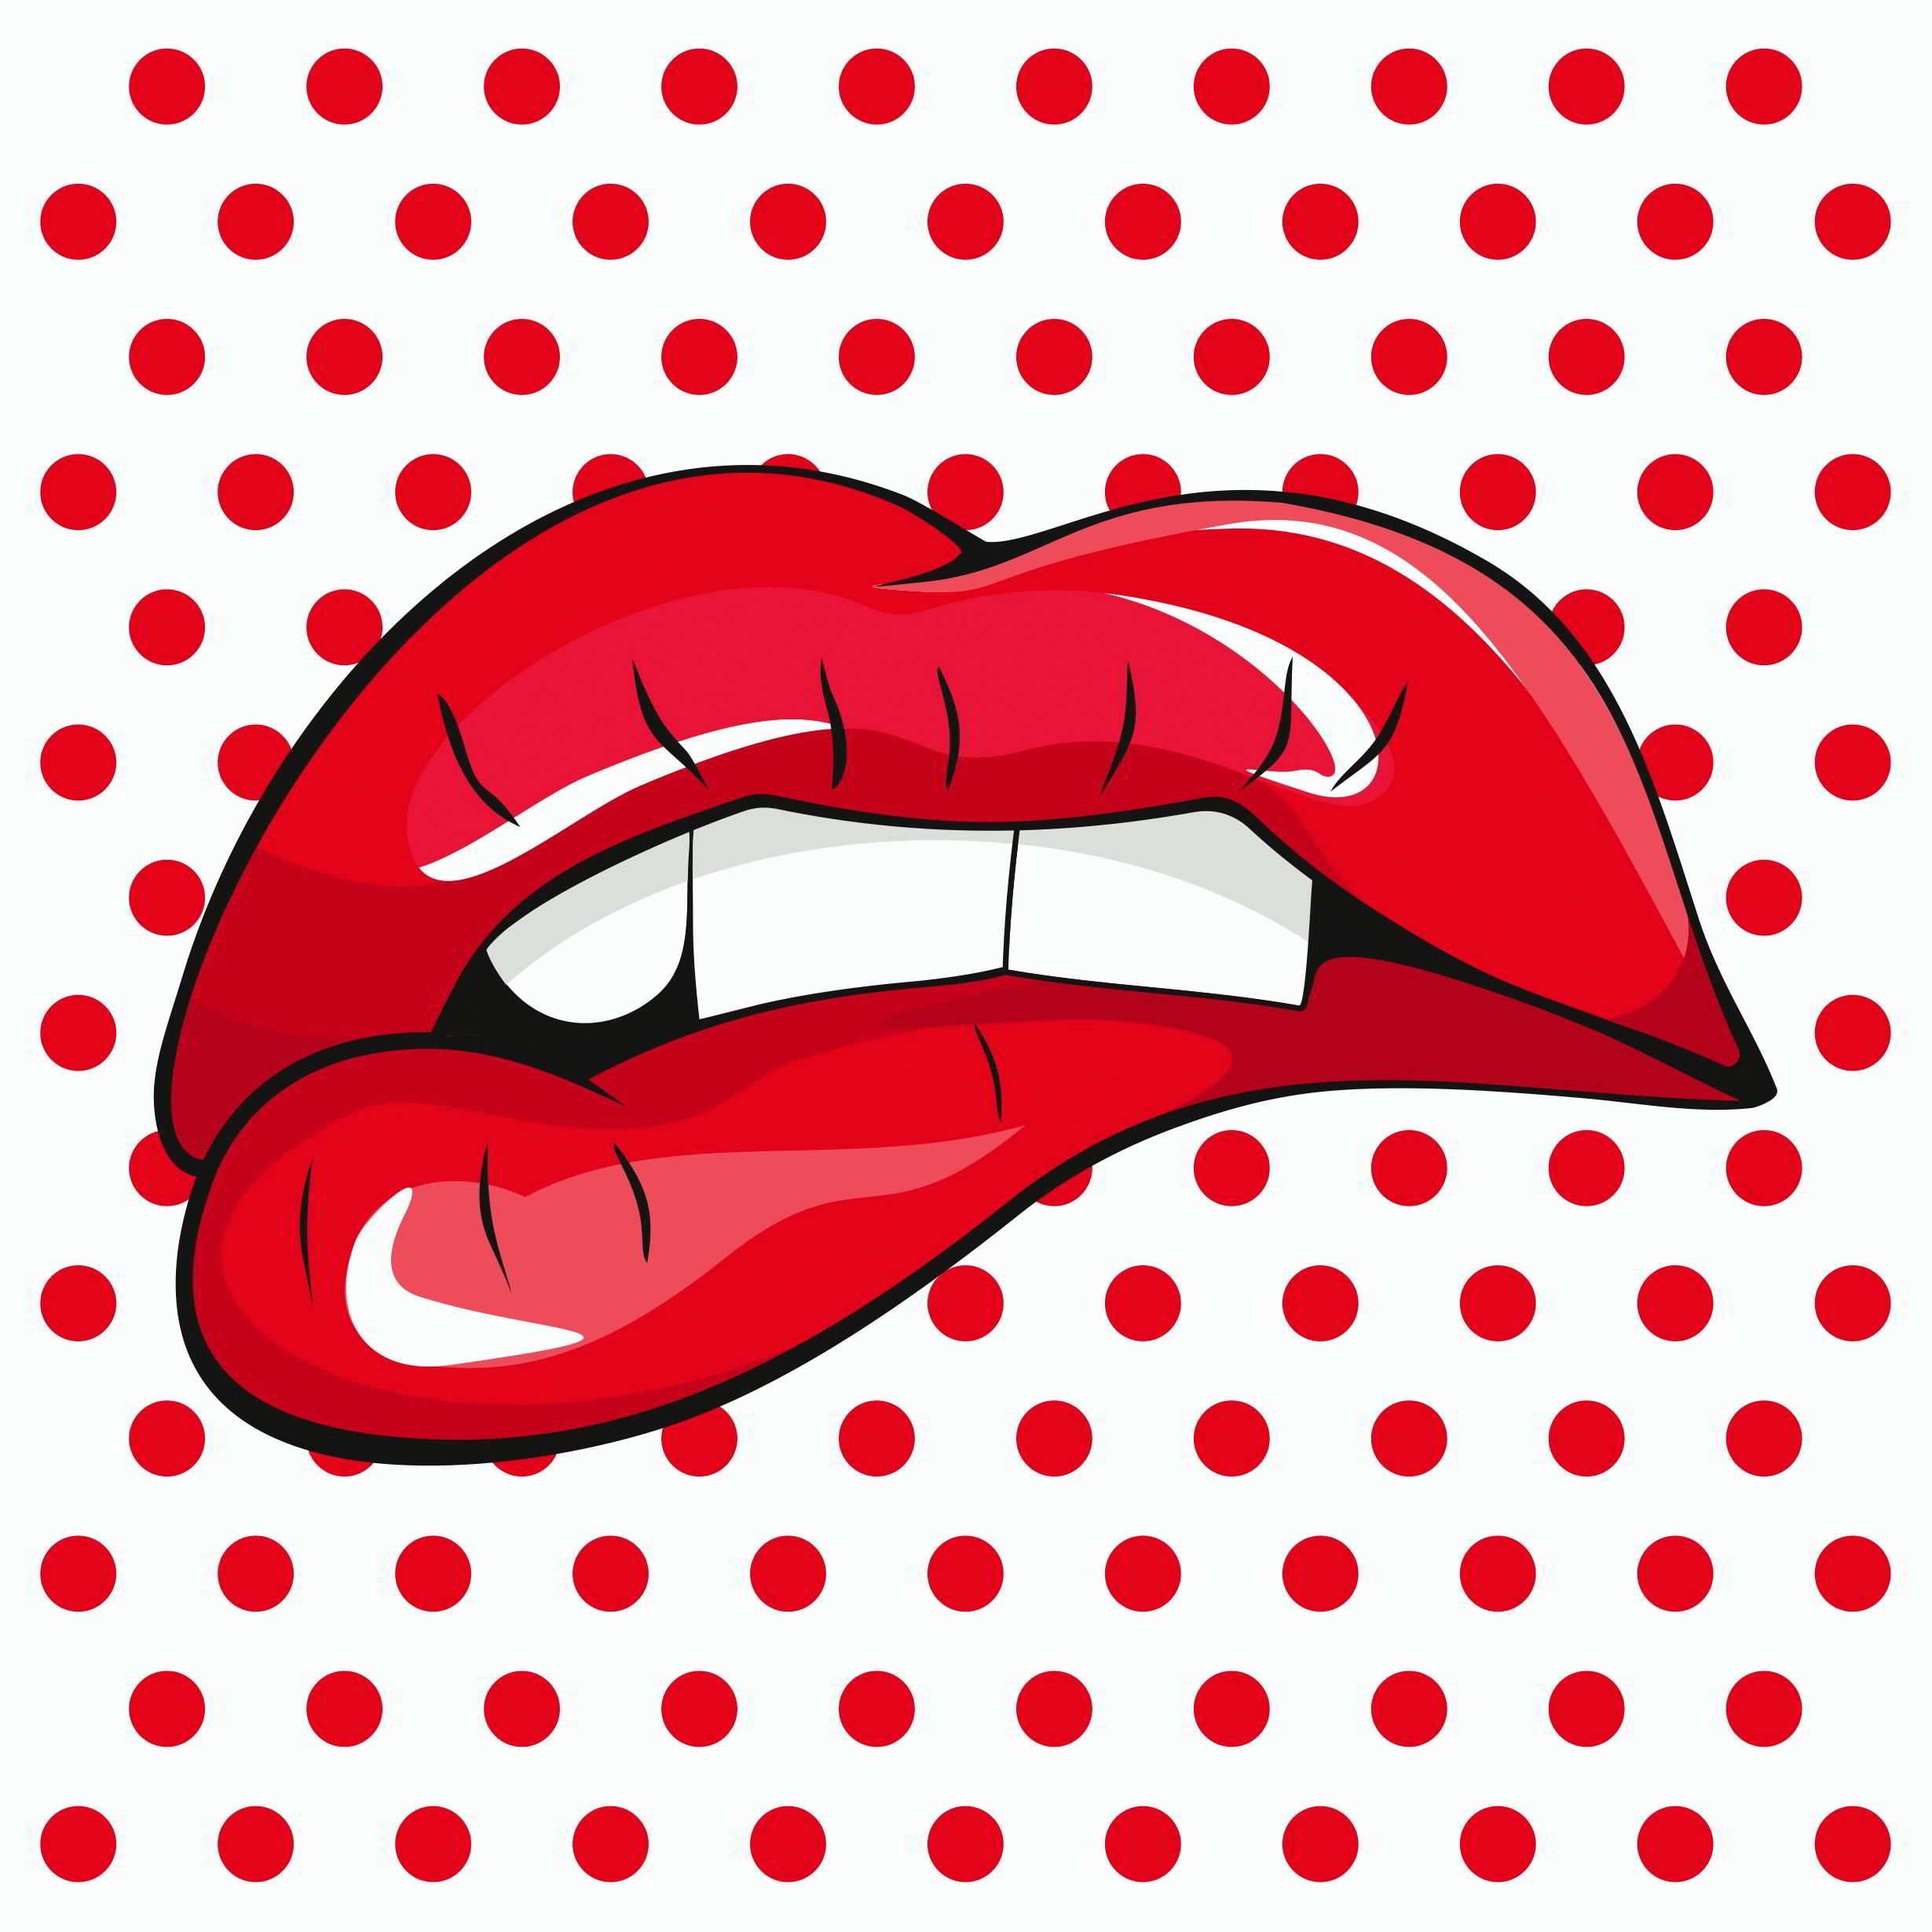 Les baumes à lèvres pour femmes les mieux notés en 2020.